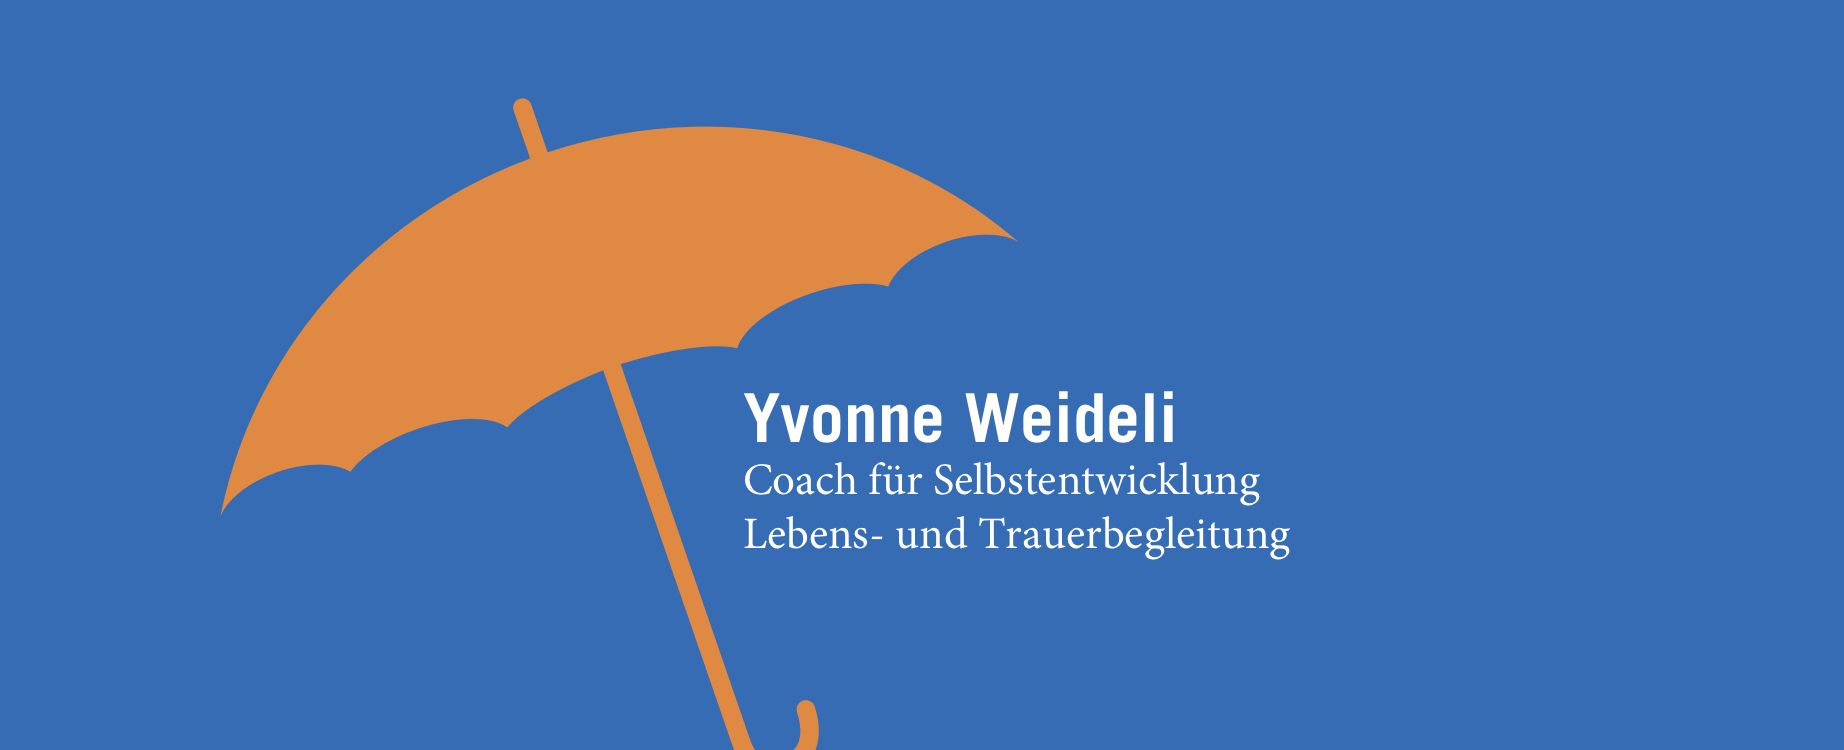 Yvonne Weideli Coach für Selbstentwicklung, Lebens- und Trauerbegleitung